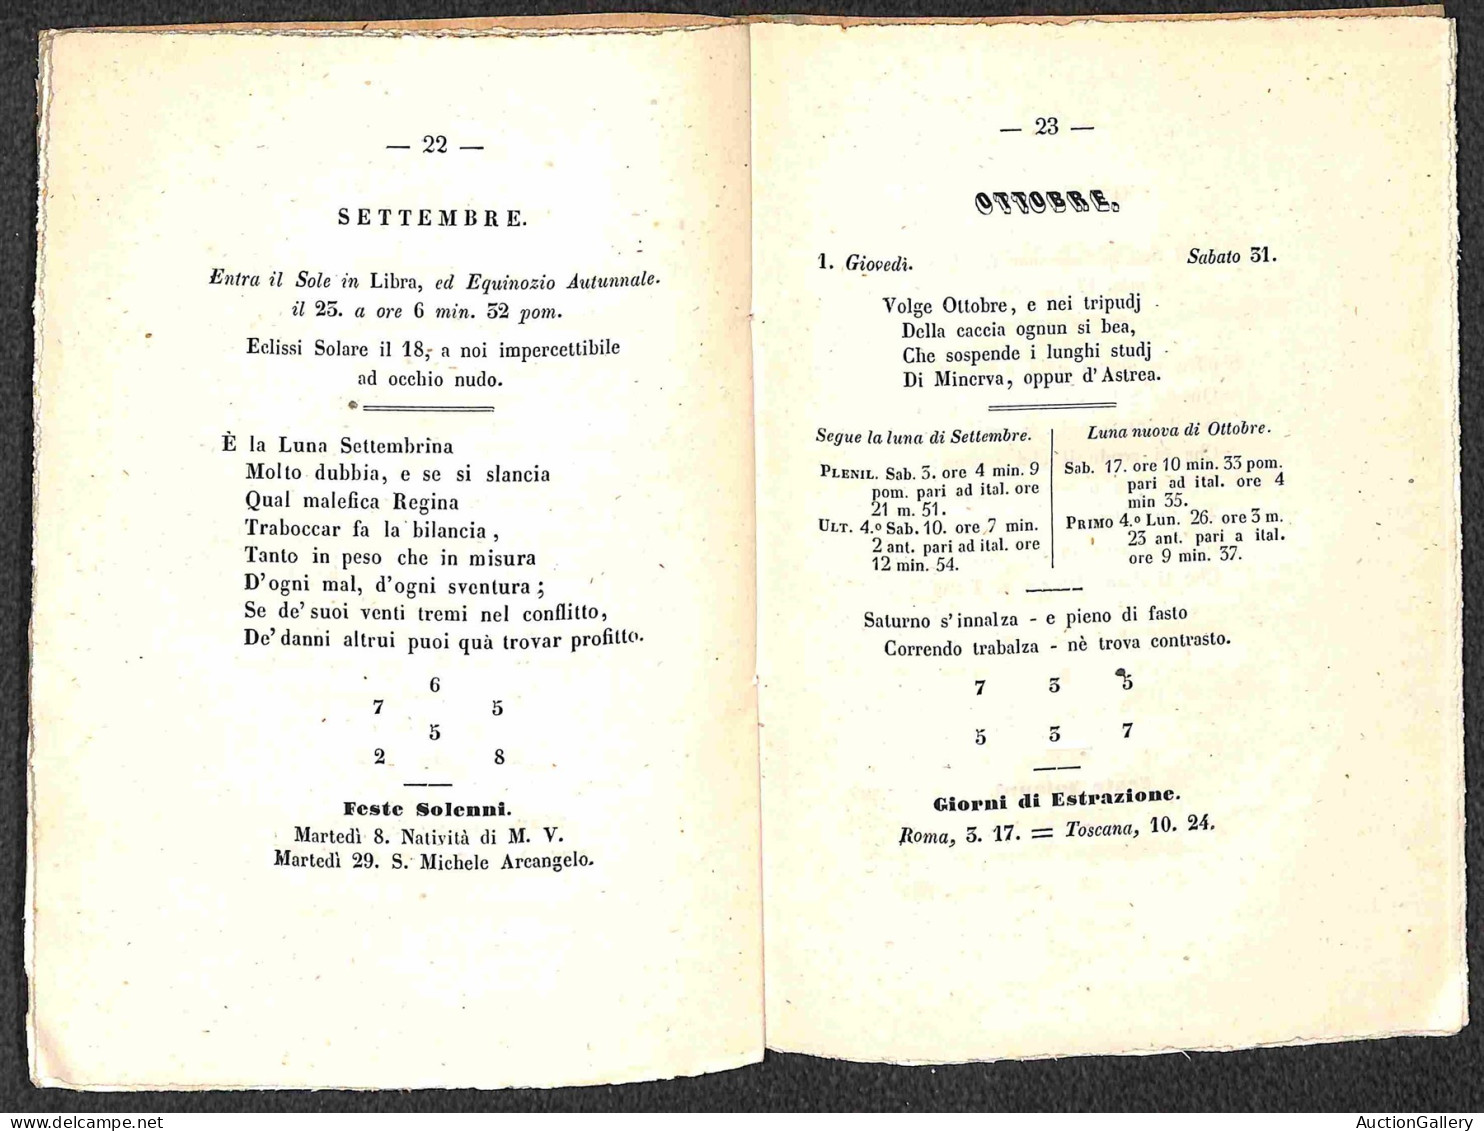 DOCUMENTI/VARIE - 1857 - Cabola del Giuoco del Lotto dell'arabo astronomo Albumazalambra - opuscolo di 32 pagine rilegat